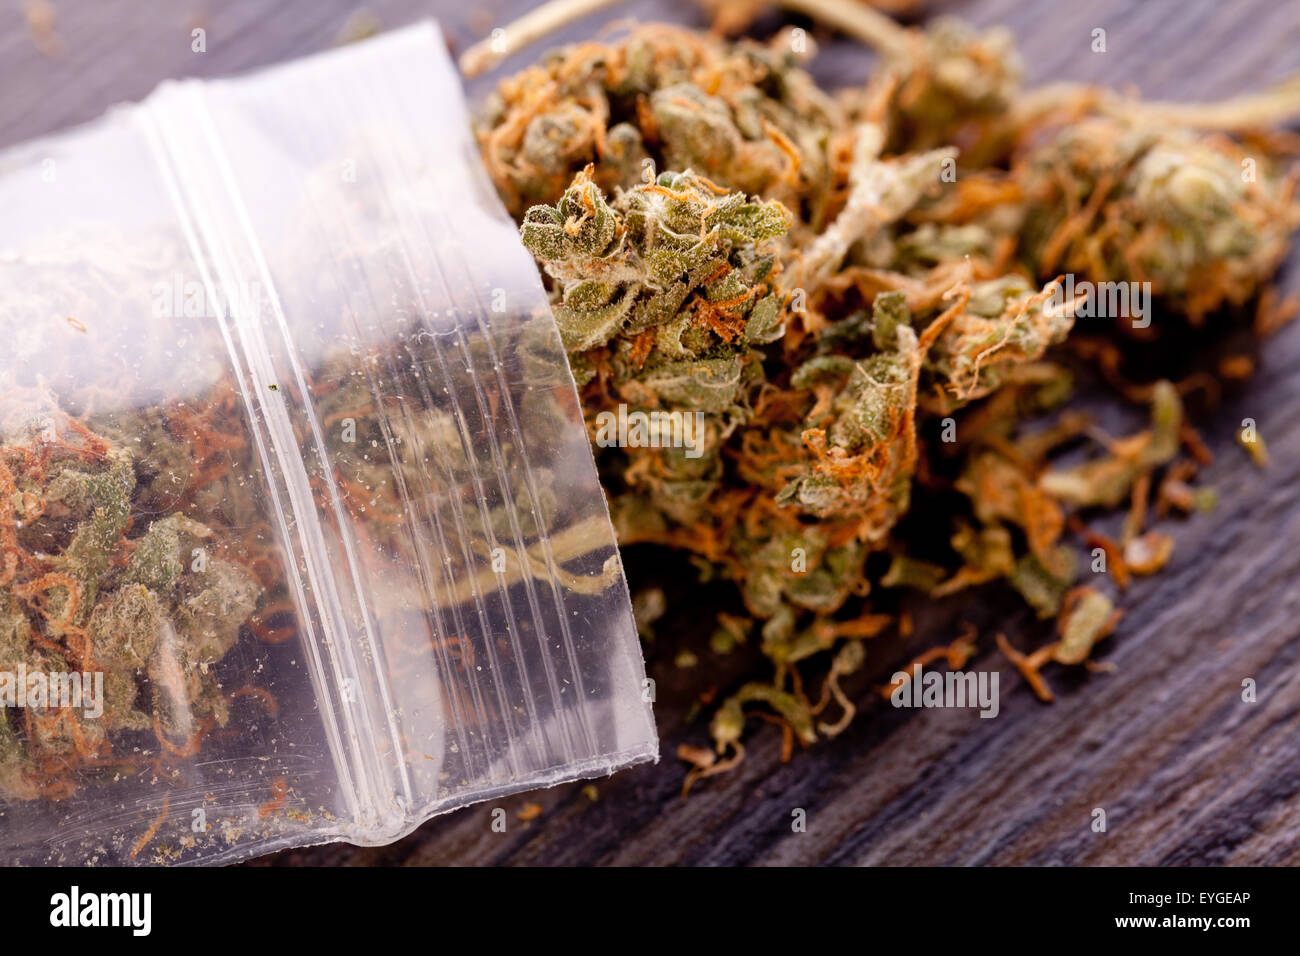 Close up cannabis séché ou feuilles de marijuana utilisée pour la médecine ou de médicaments psychoactifs sur le dessus de la table Banque D'Images